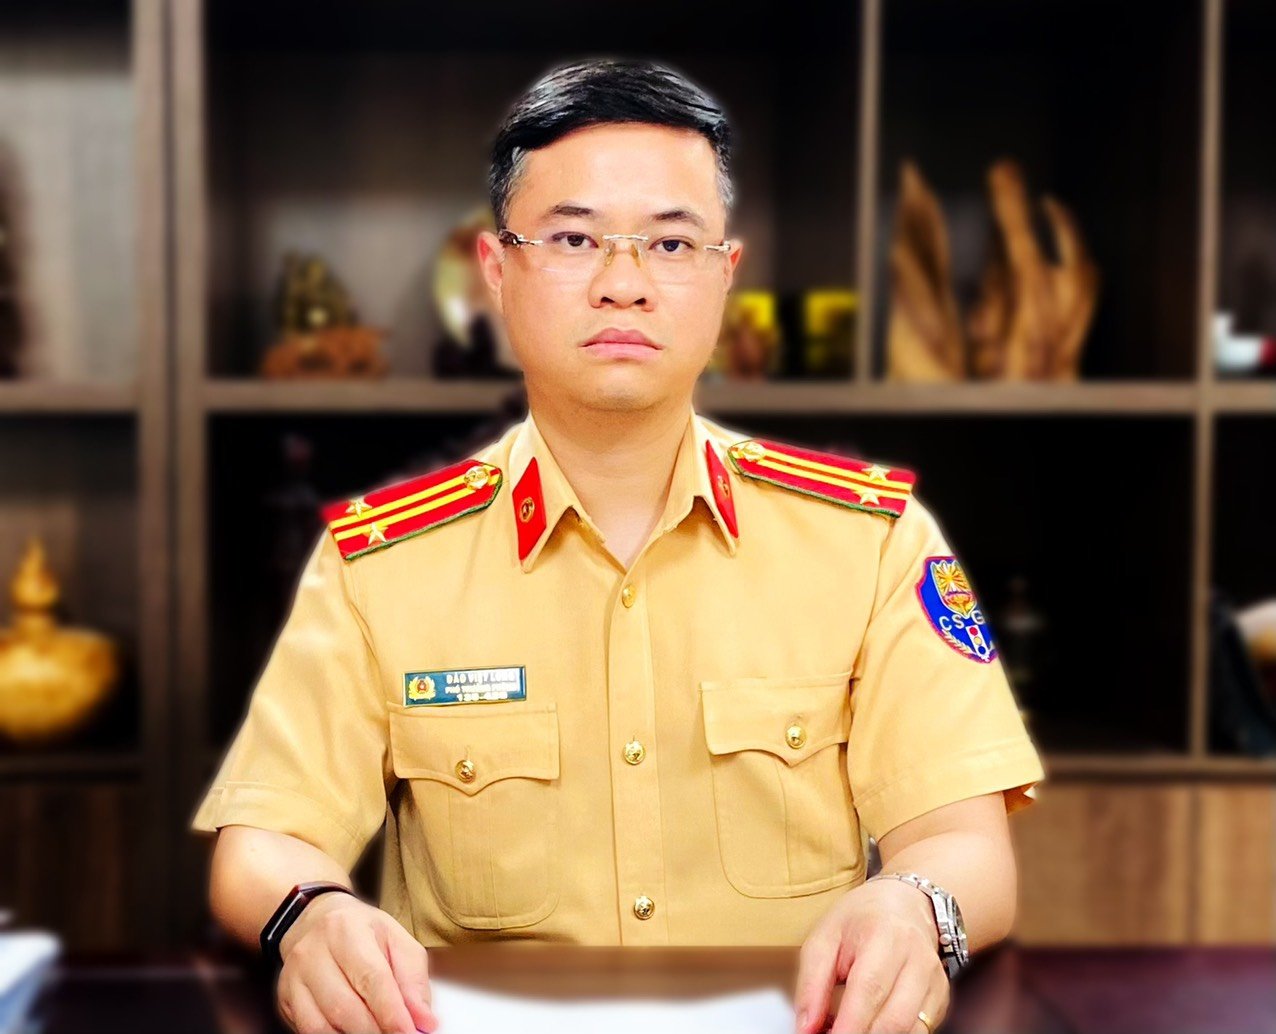 Trung tá Đào Việt Long, - Phó Trưởng Phòng CSGT (Công an TP. Hà Nội)